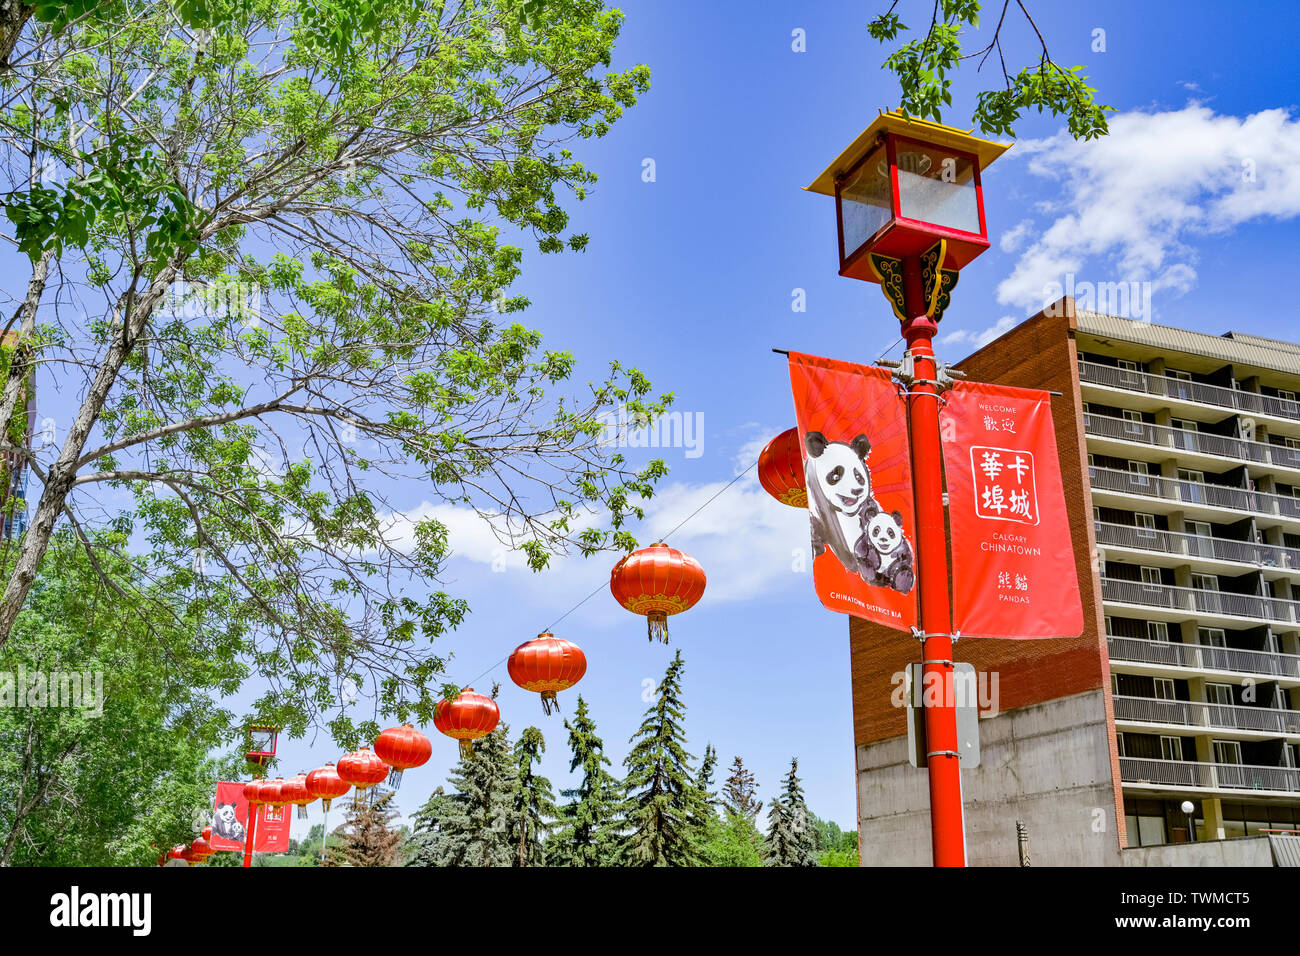 Streetlamp and Chinese lanterns, Chinatown, Calgary, Alberta, Canada Stock Photo